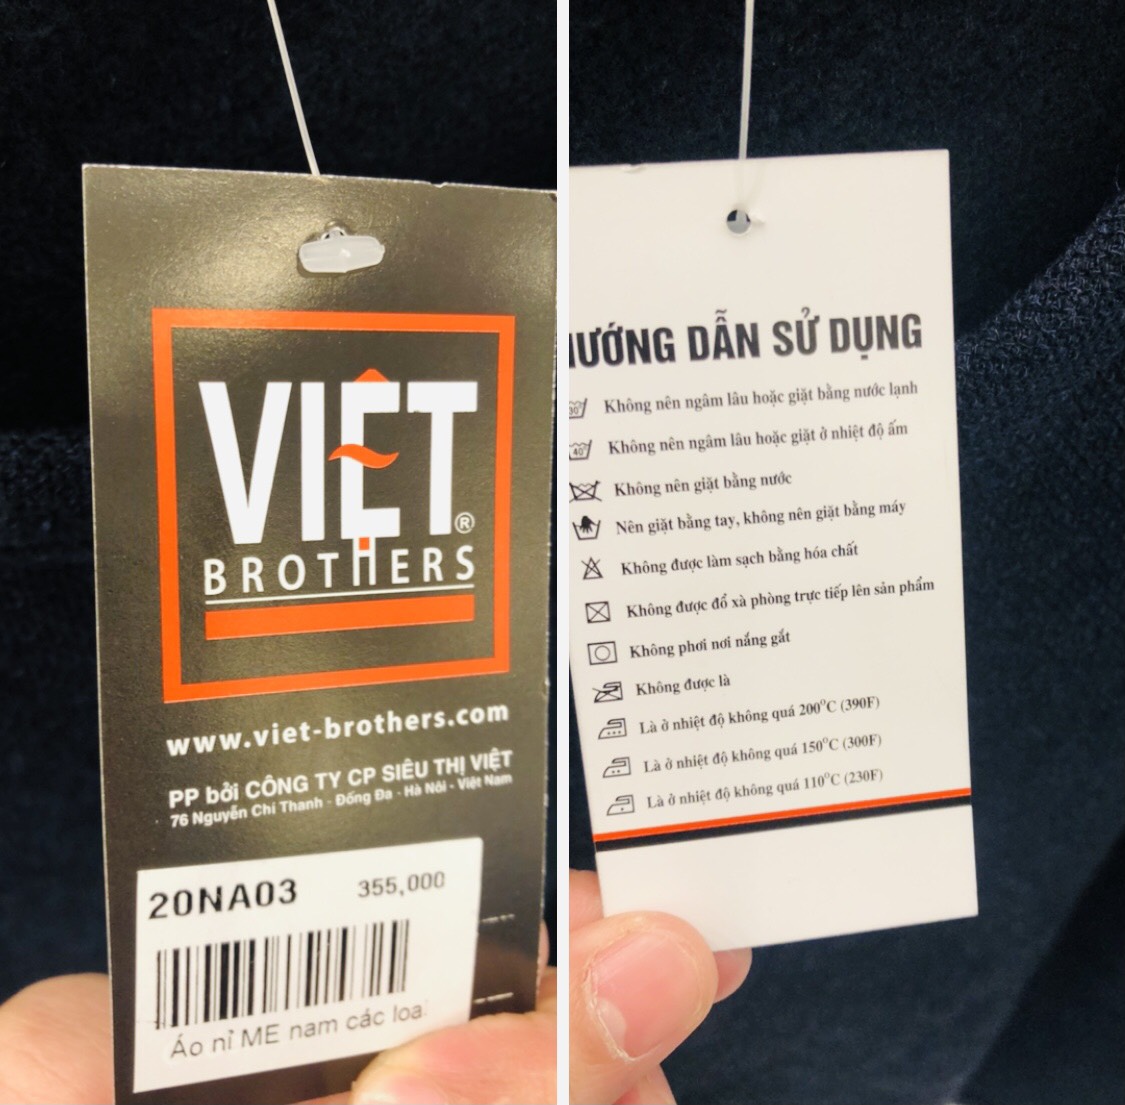 Hệ thống cửa hàng Việt Brothers bán hàng may mặc thiếu tem CR, chất lượng liệu có đảm bảo?